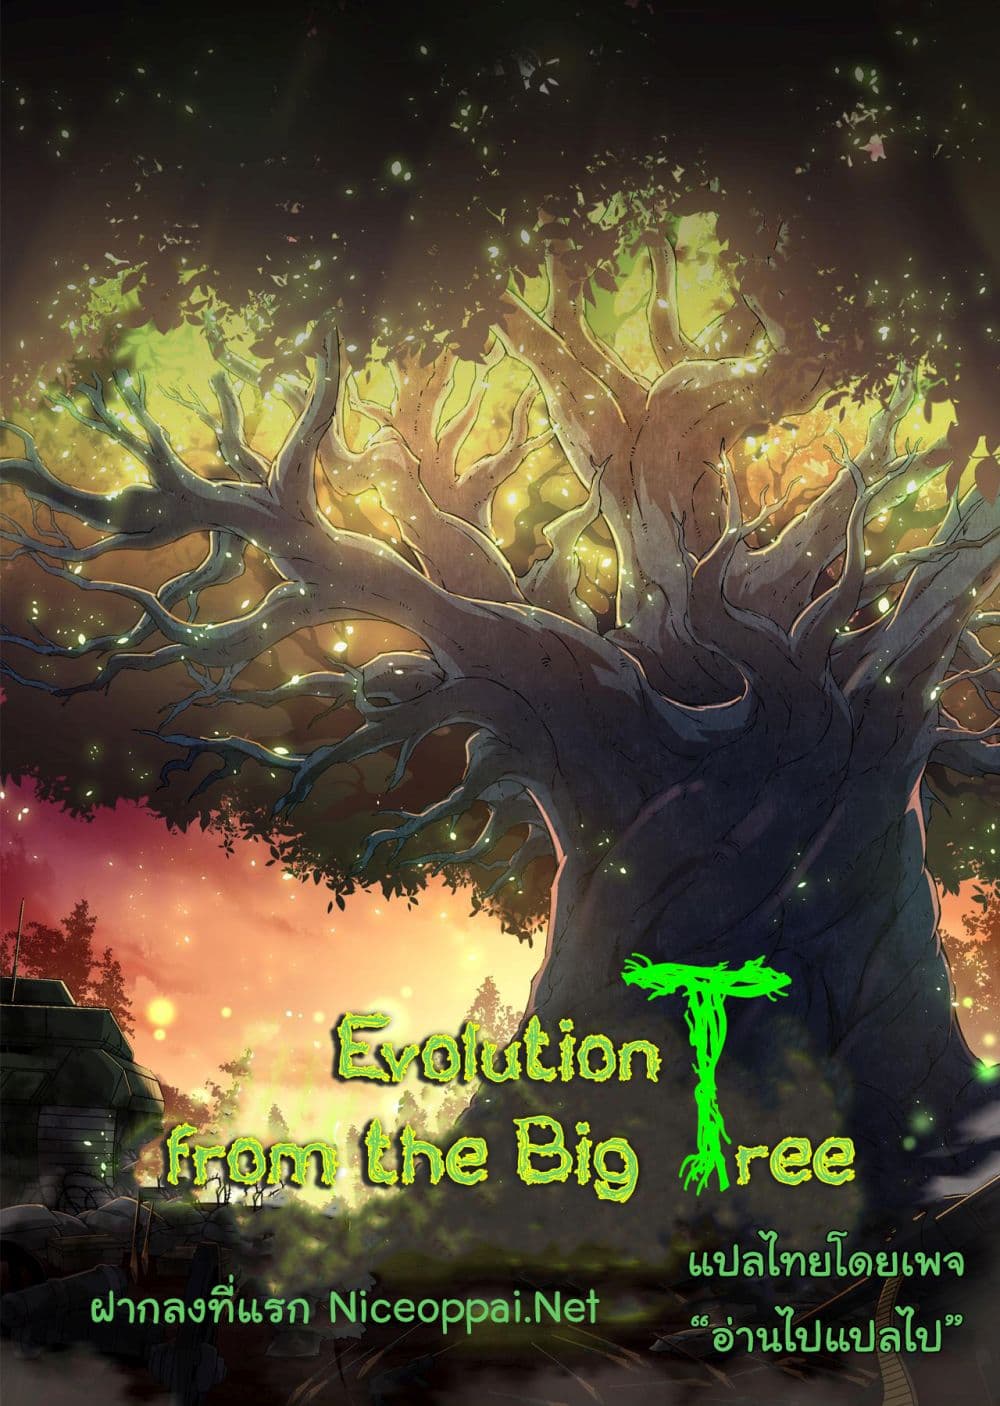 Evolution from the Big Tree Ã Â¸â€¢Ã Â¸Â­Ã Â¸â„¢Ã Â¸â€”Ã Â¸ÂµÃ Â¹Ë† 3 (1)